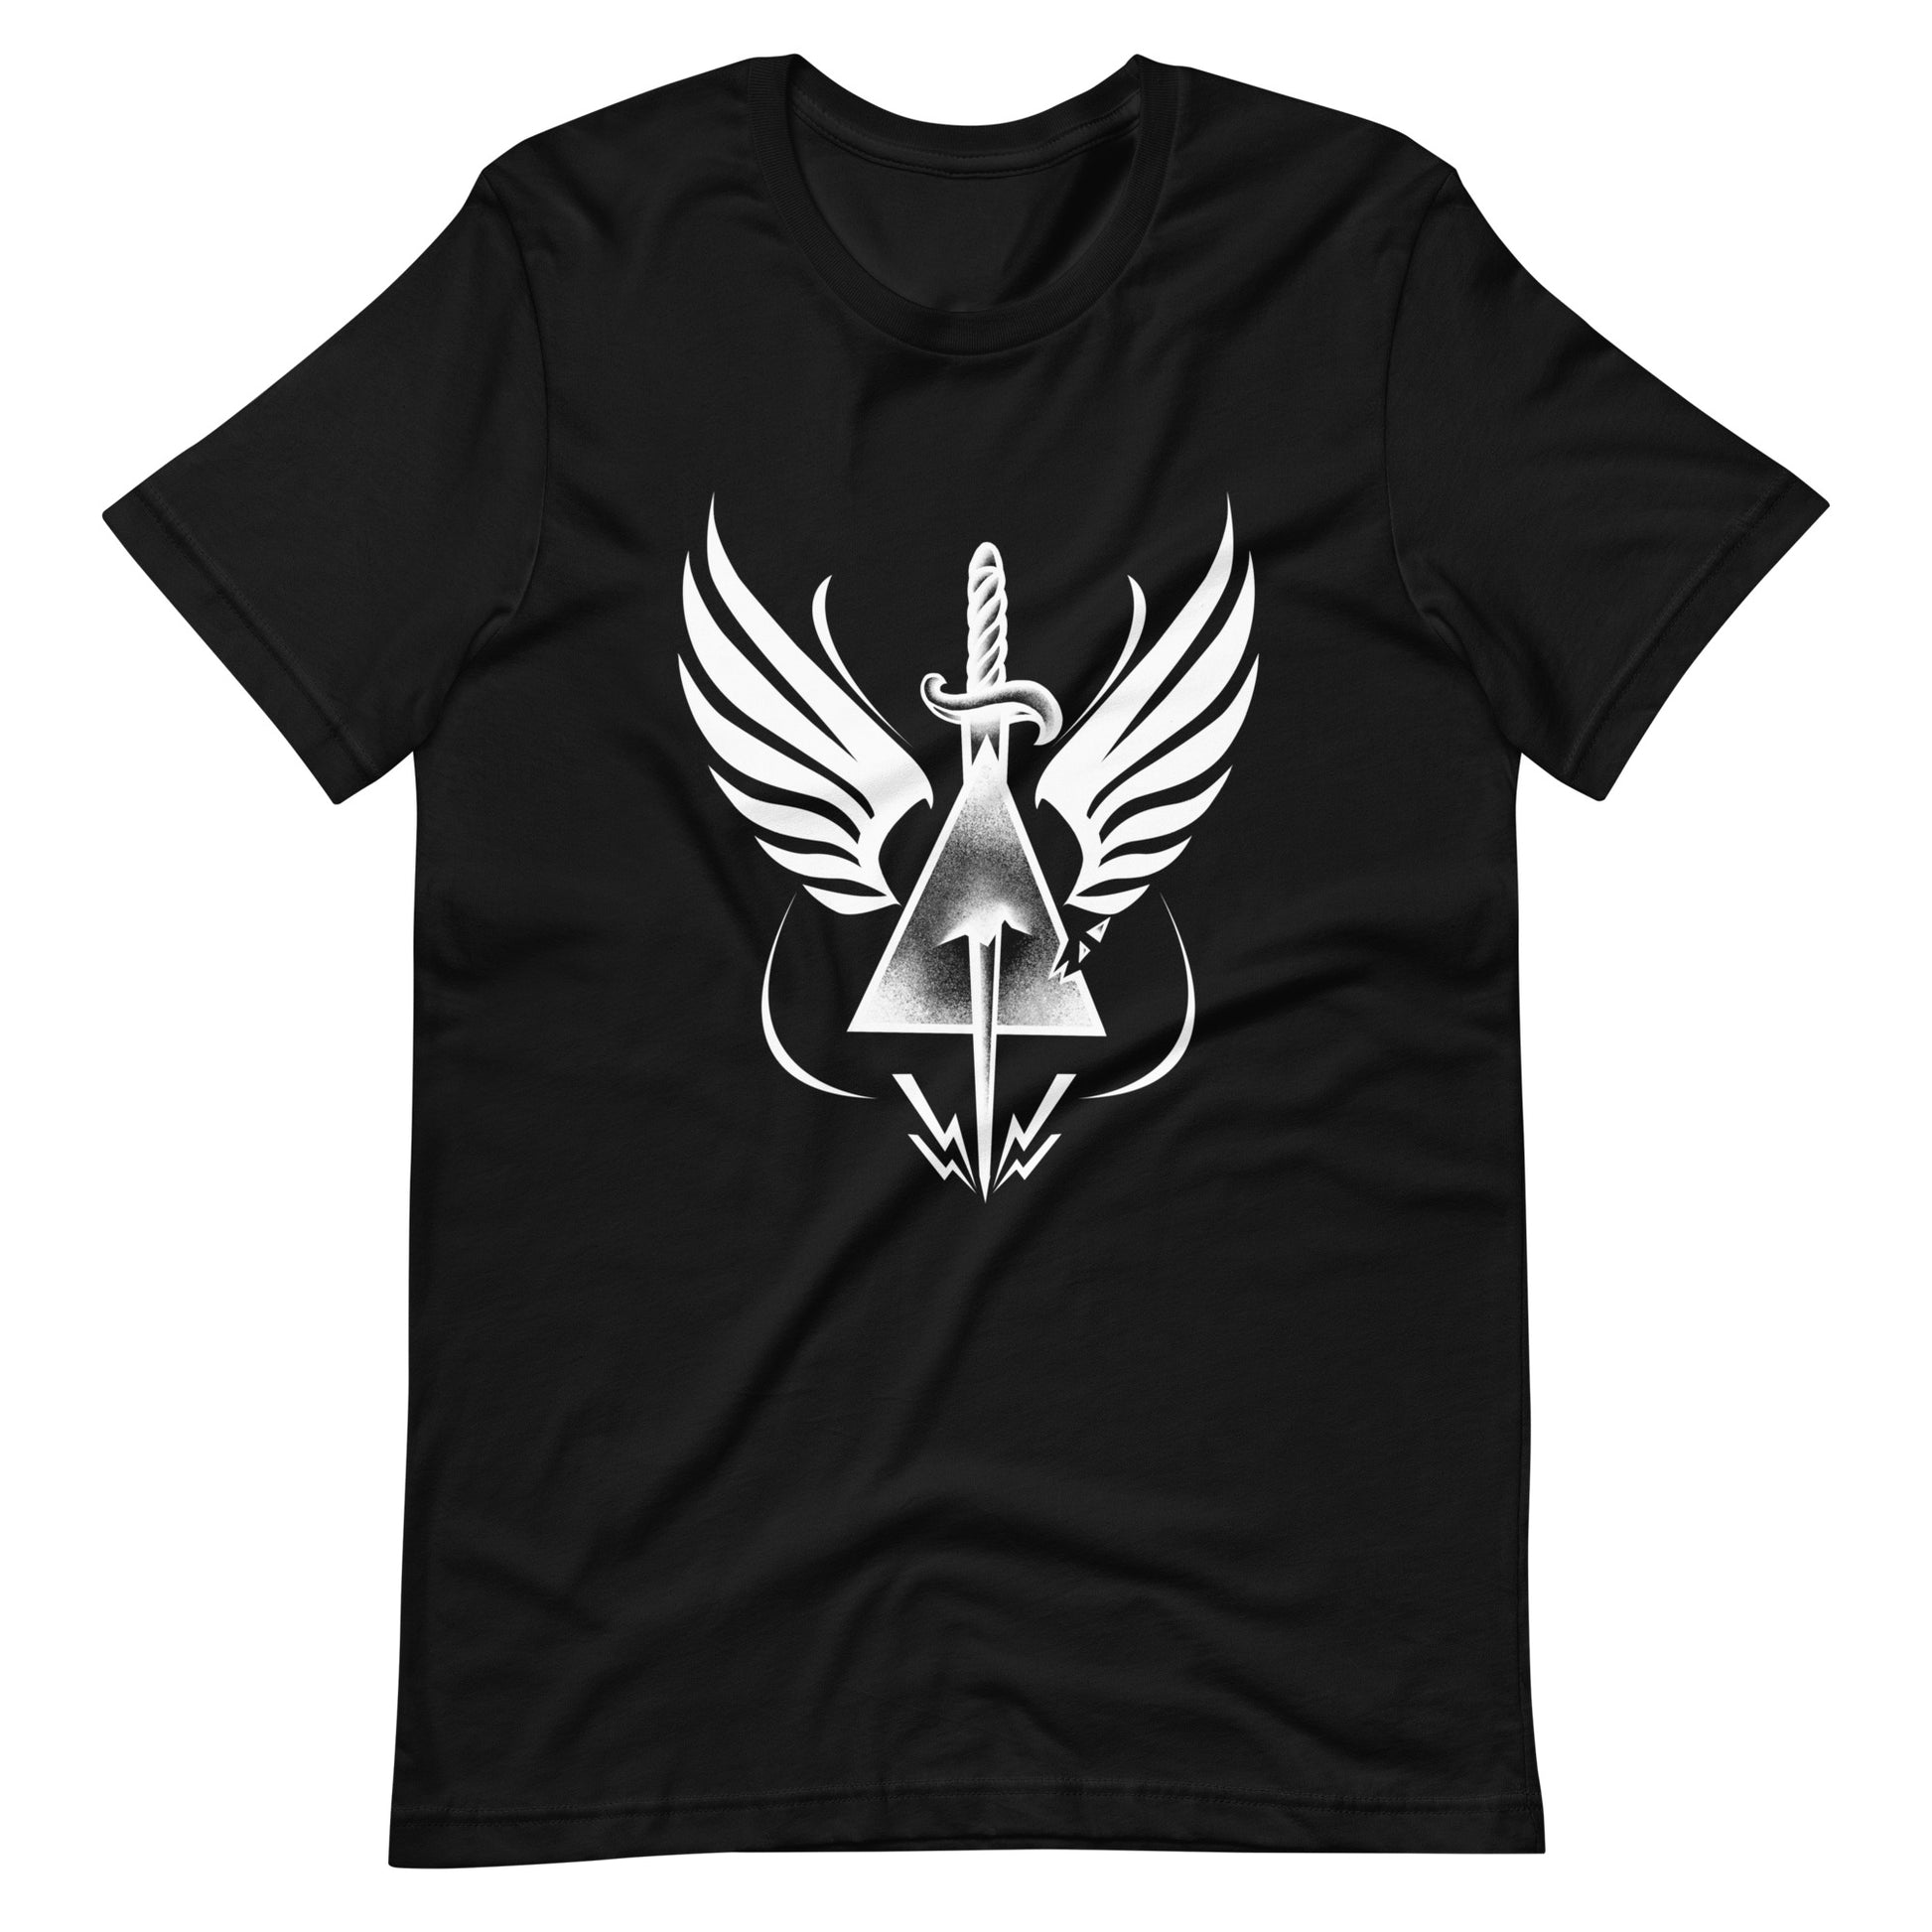 Dead Triangle - Men's t-shirt - Black Front